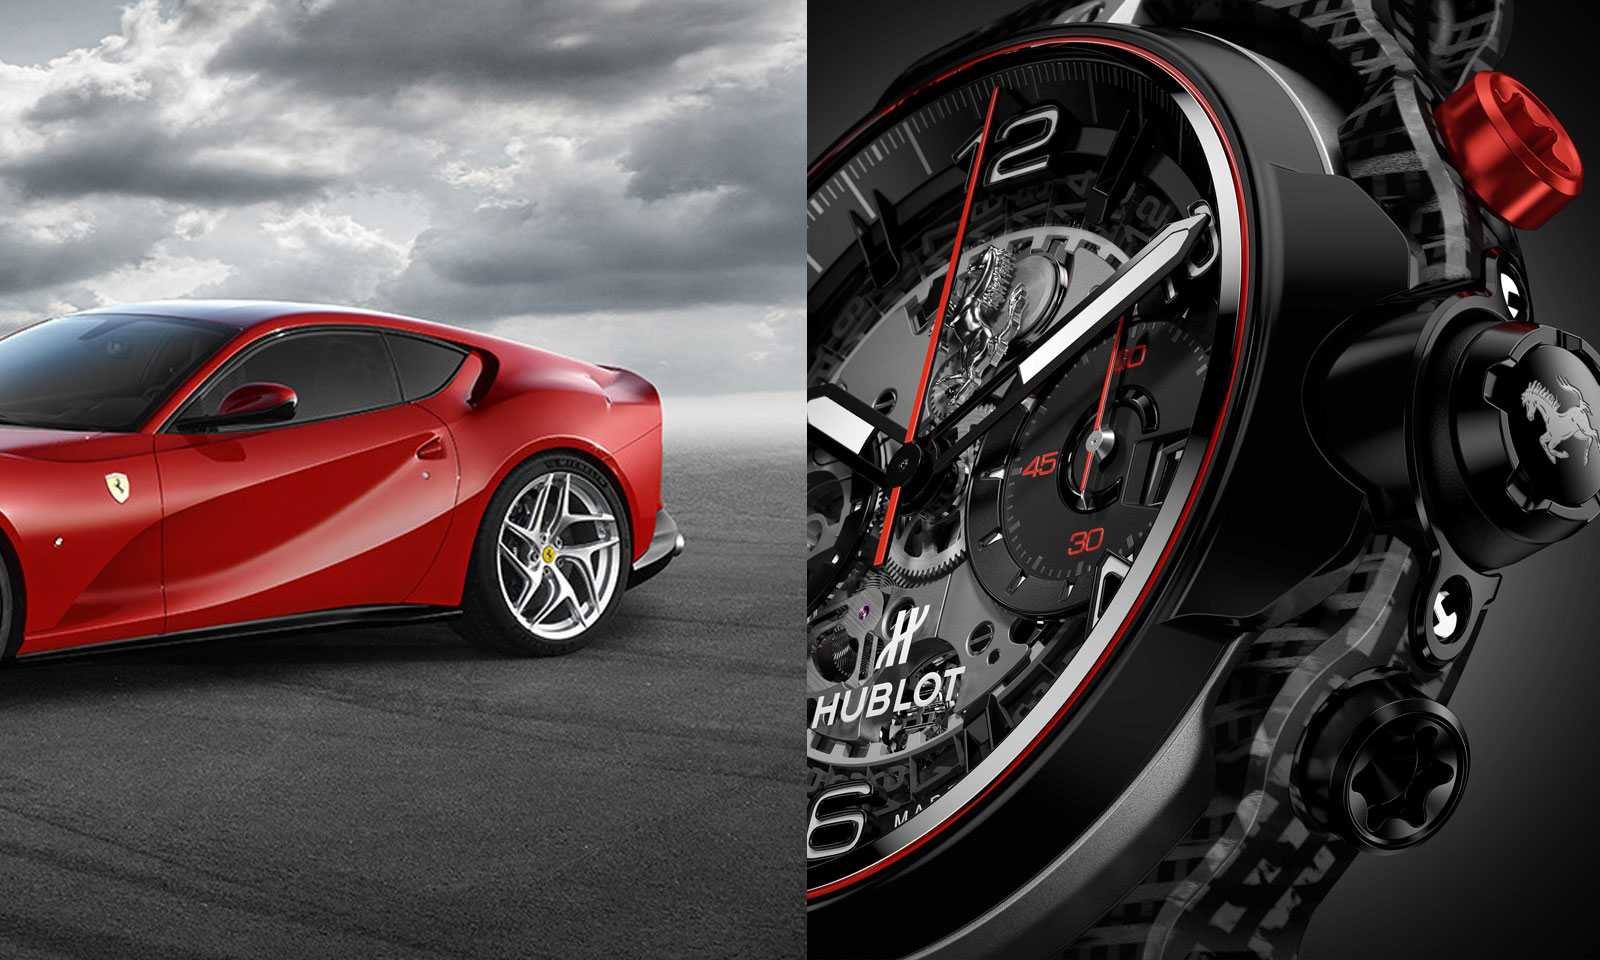 Hublot Ferrari GT watch